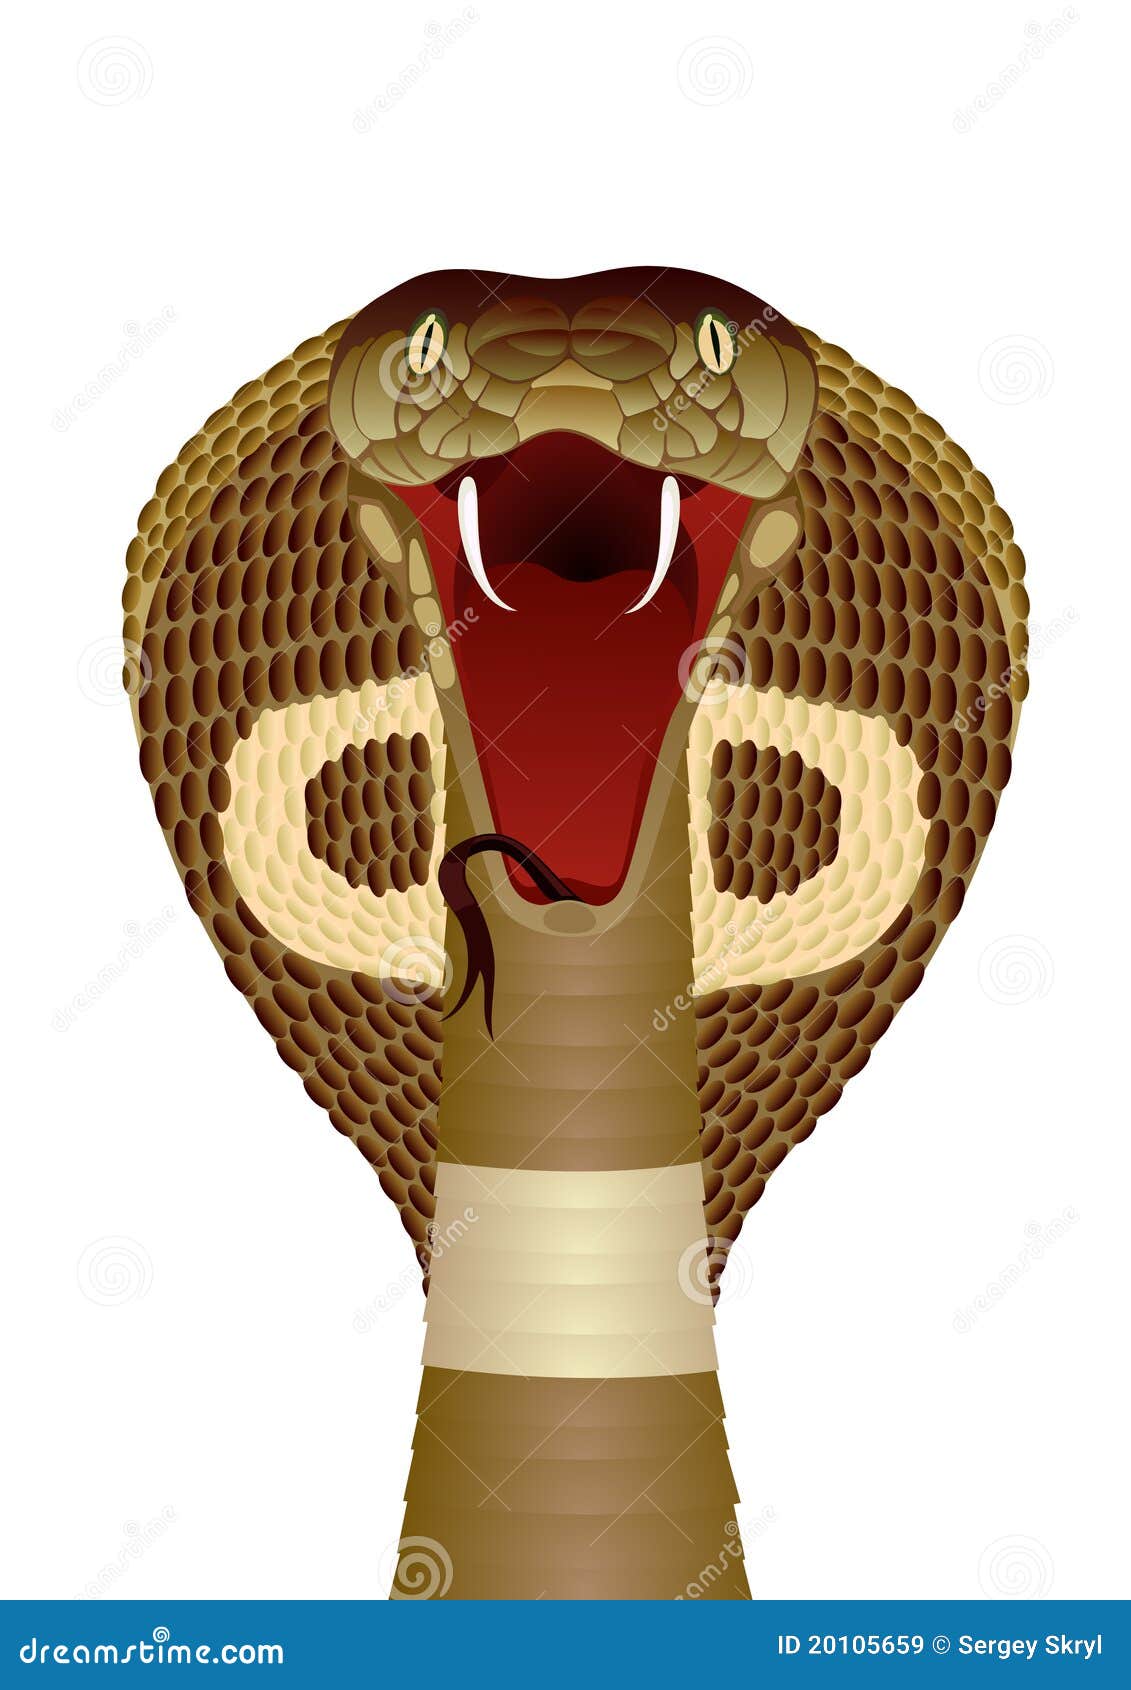 Cobra usando óculos generative ai